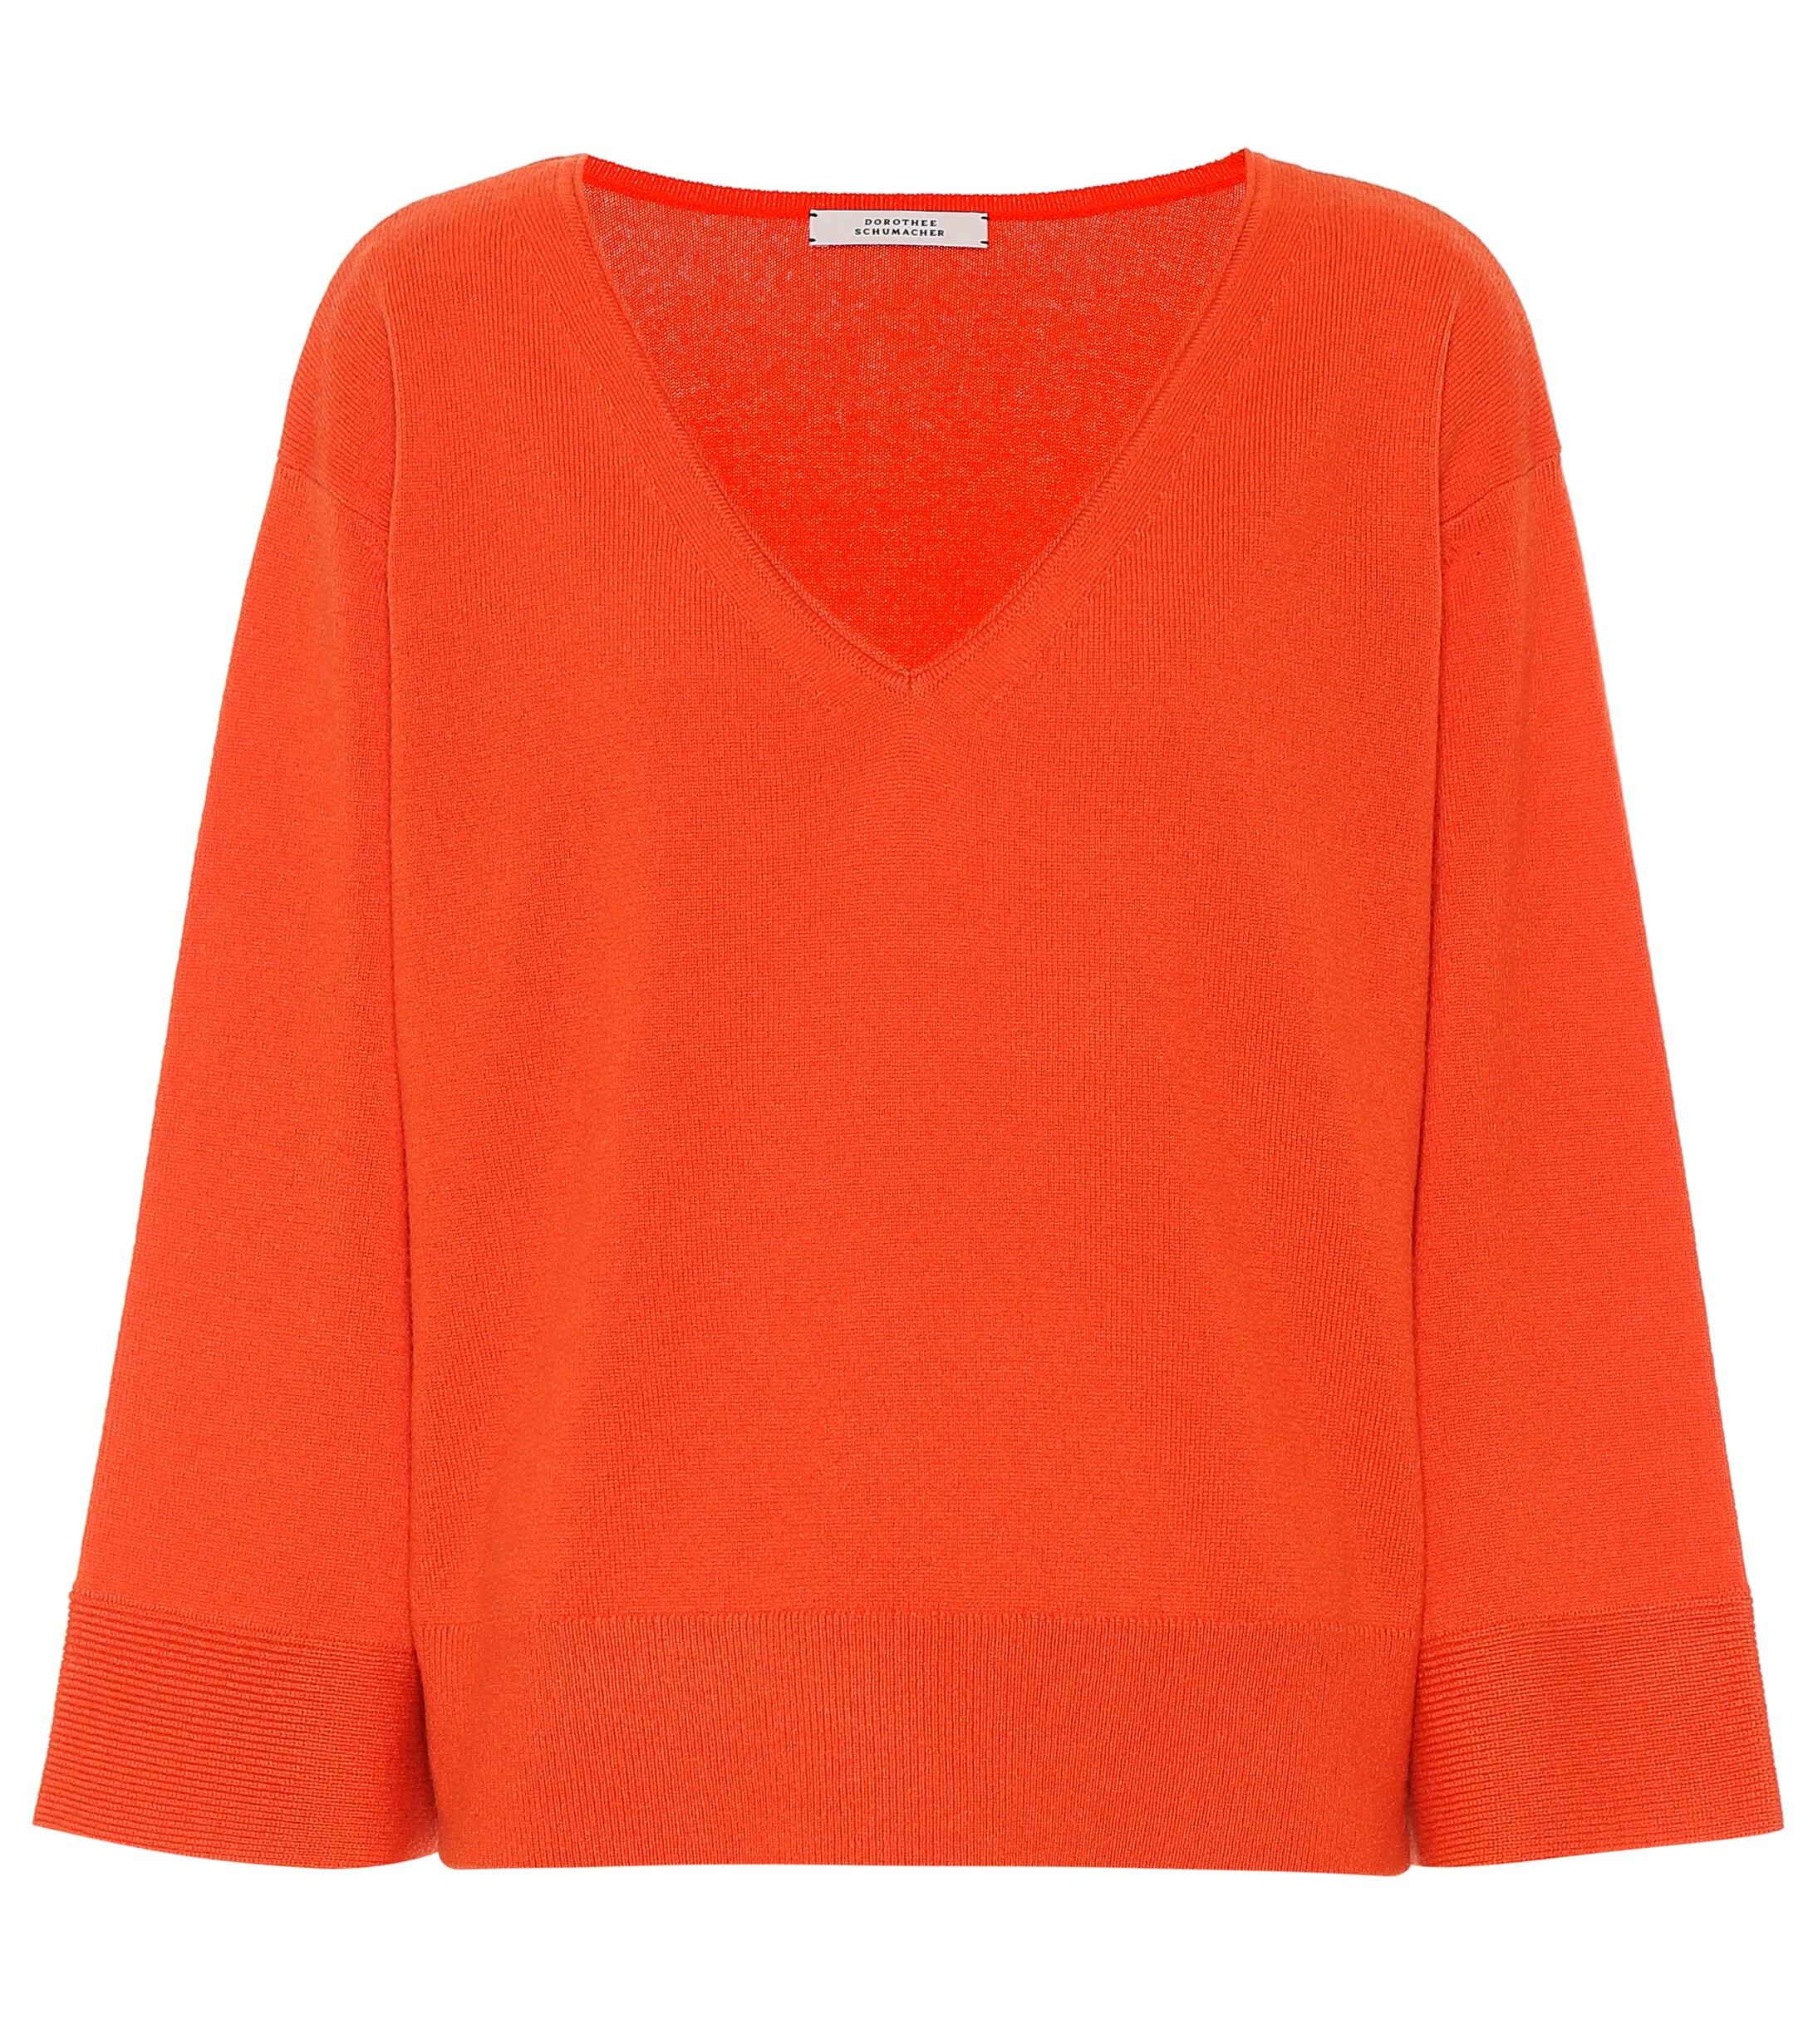 Dorothee Schumacher Cashmere Sweater in Orange - Lyst